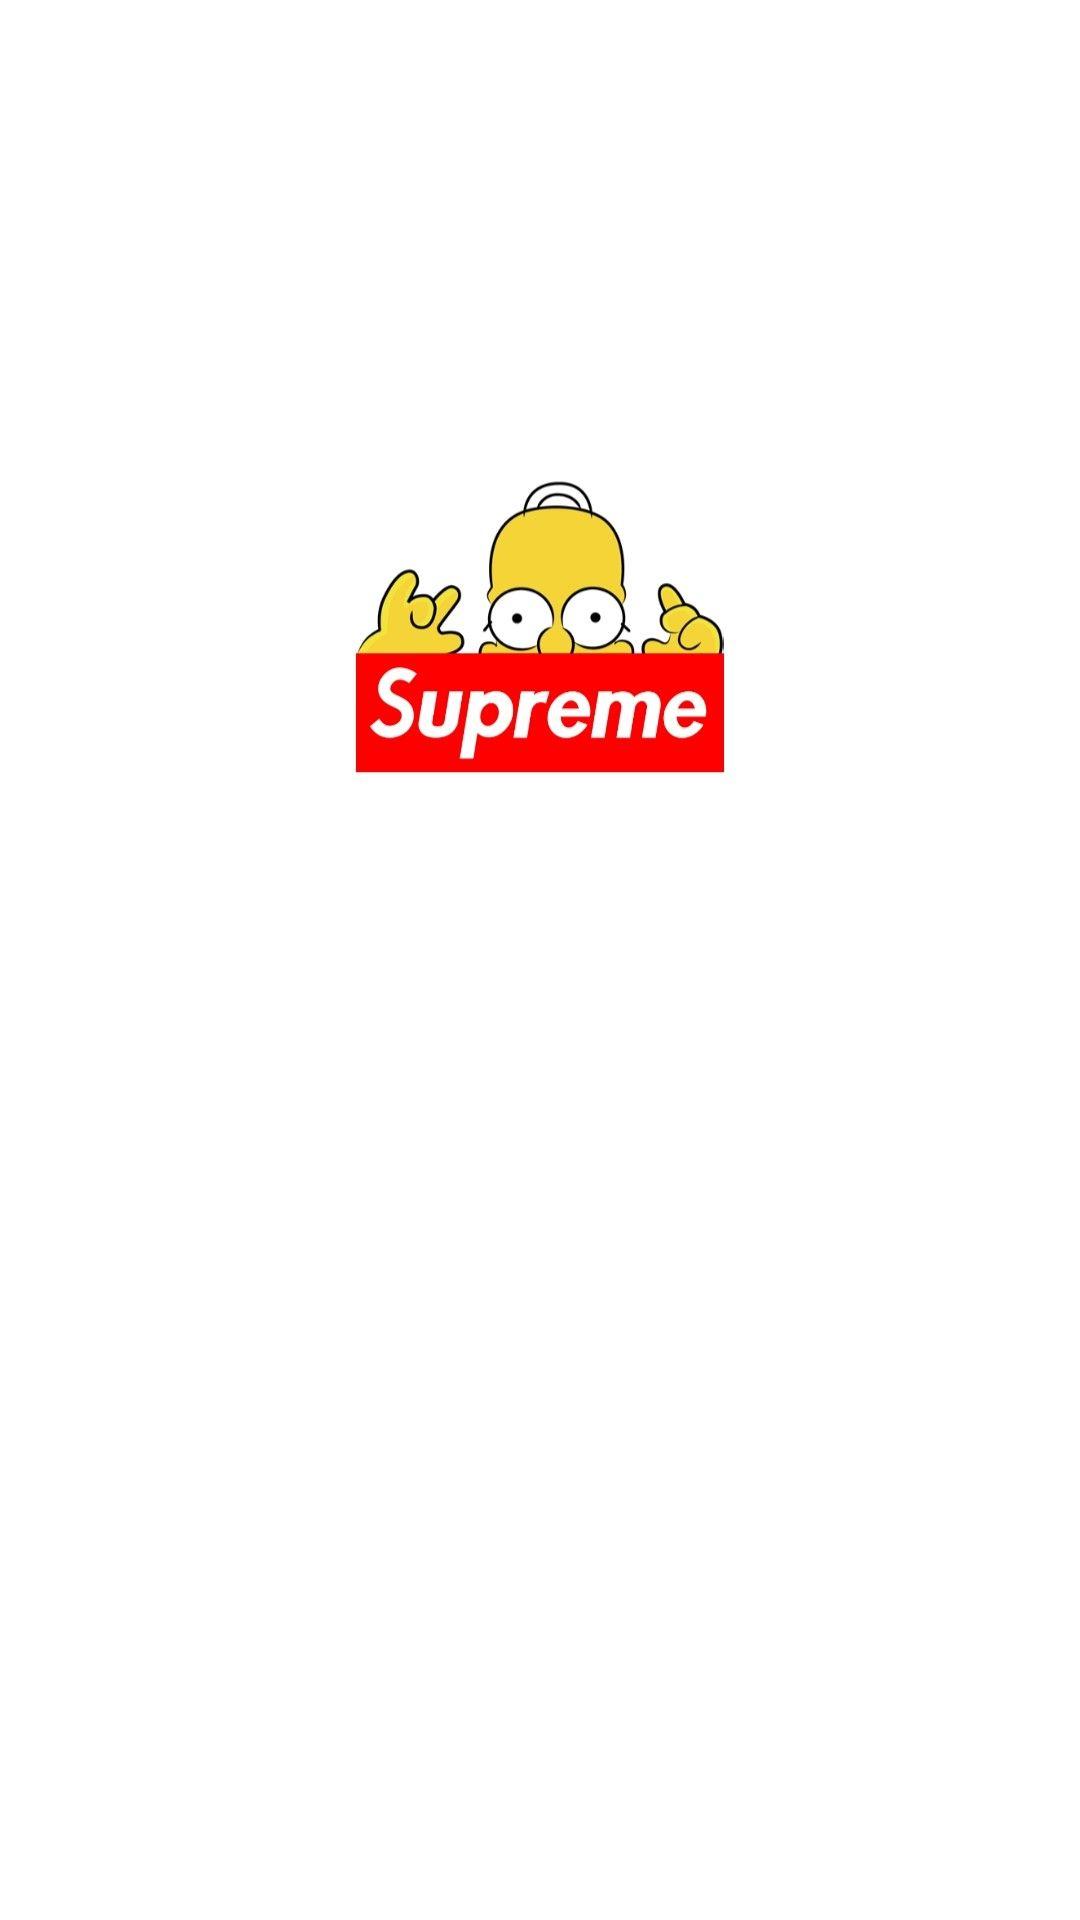 Simpson Supreme Wallpaper (Picture)